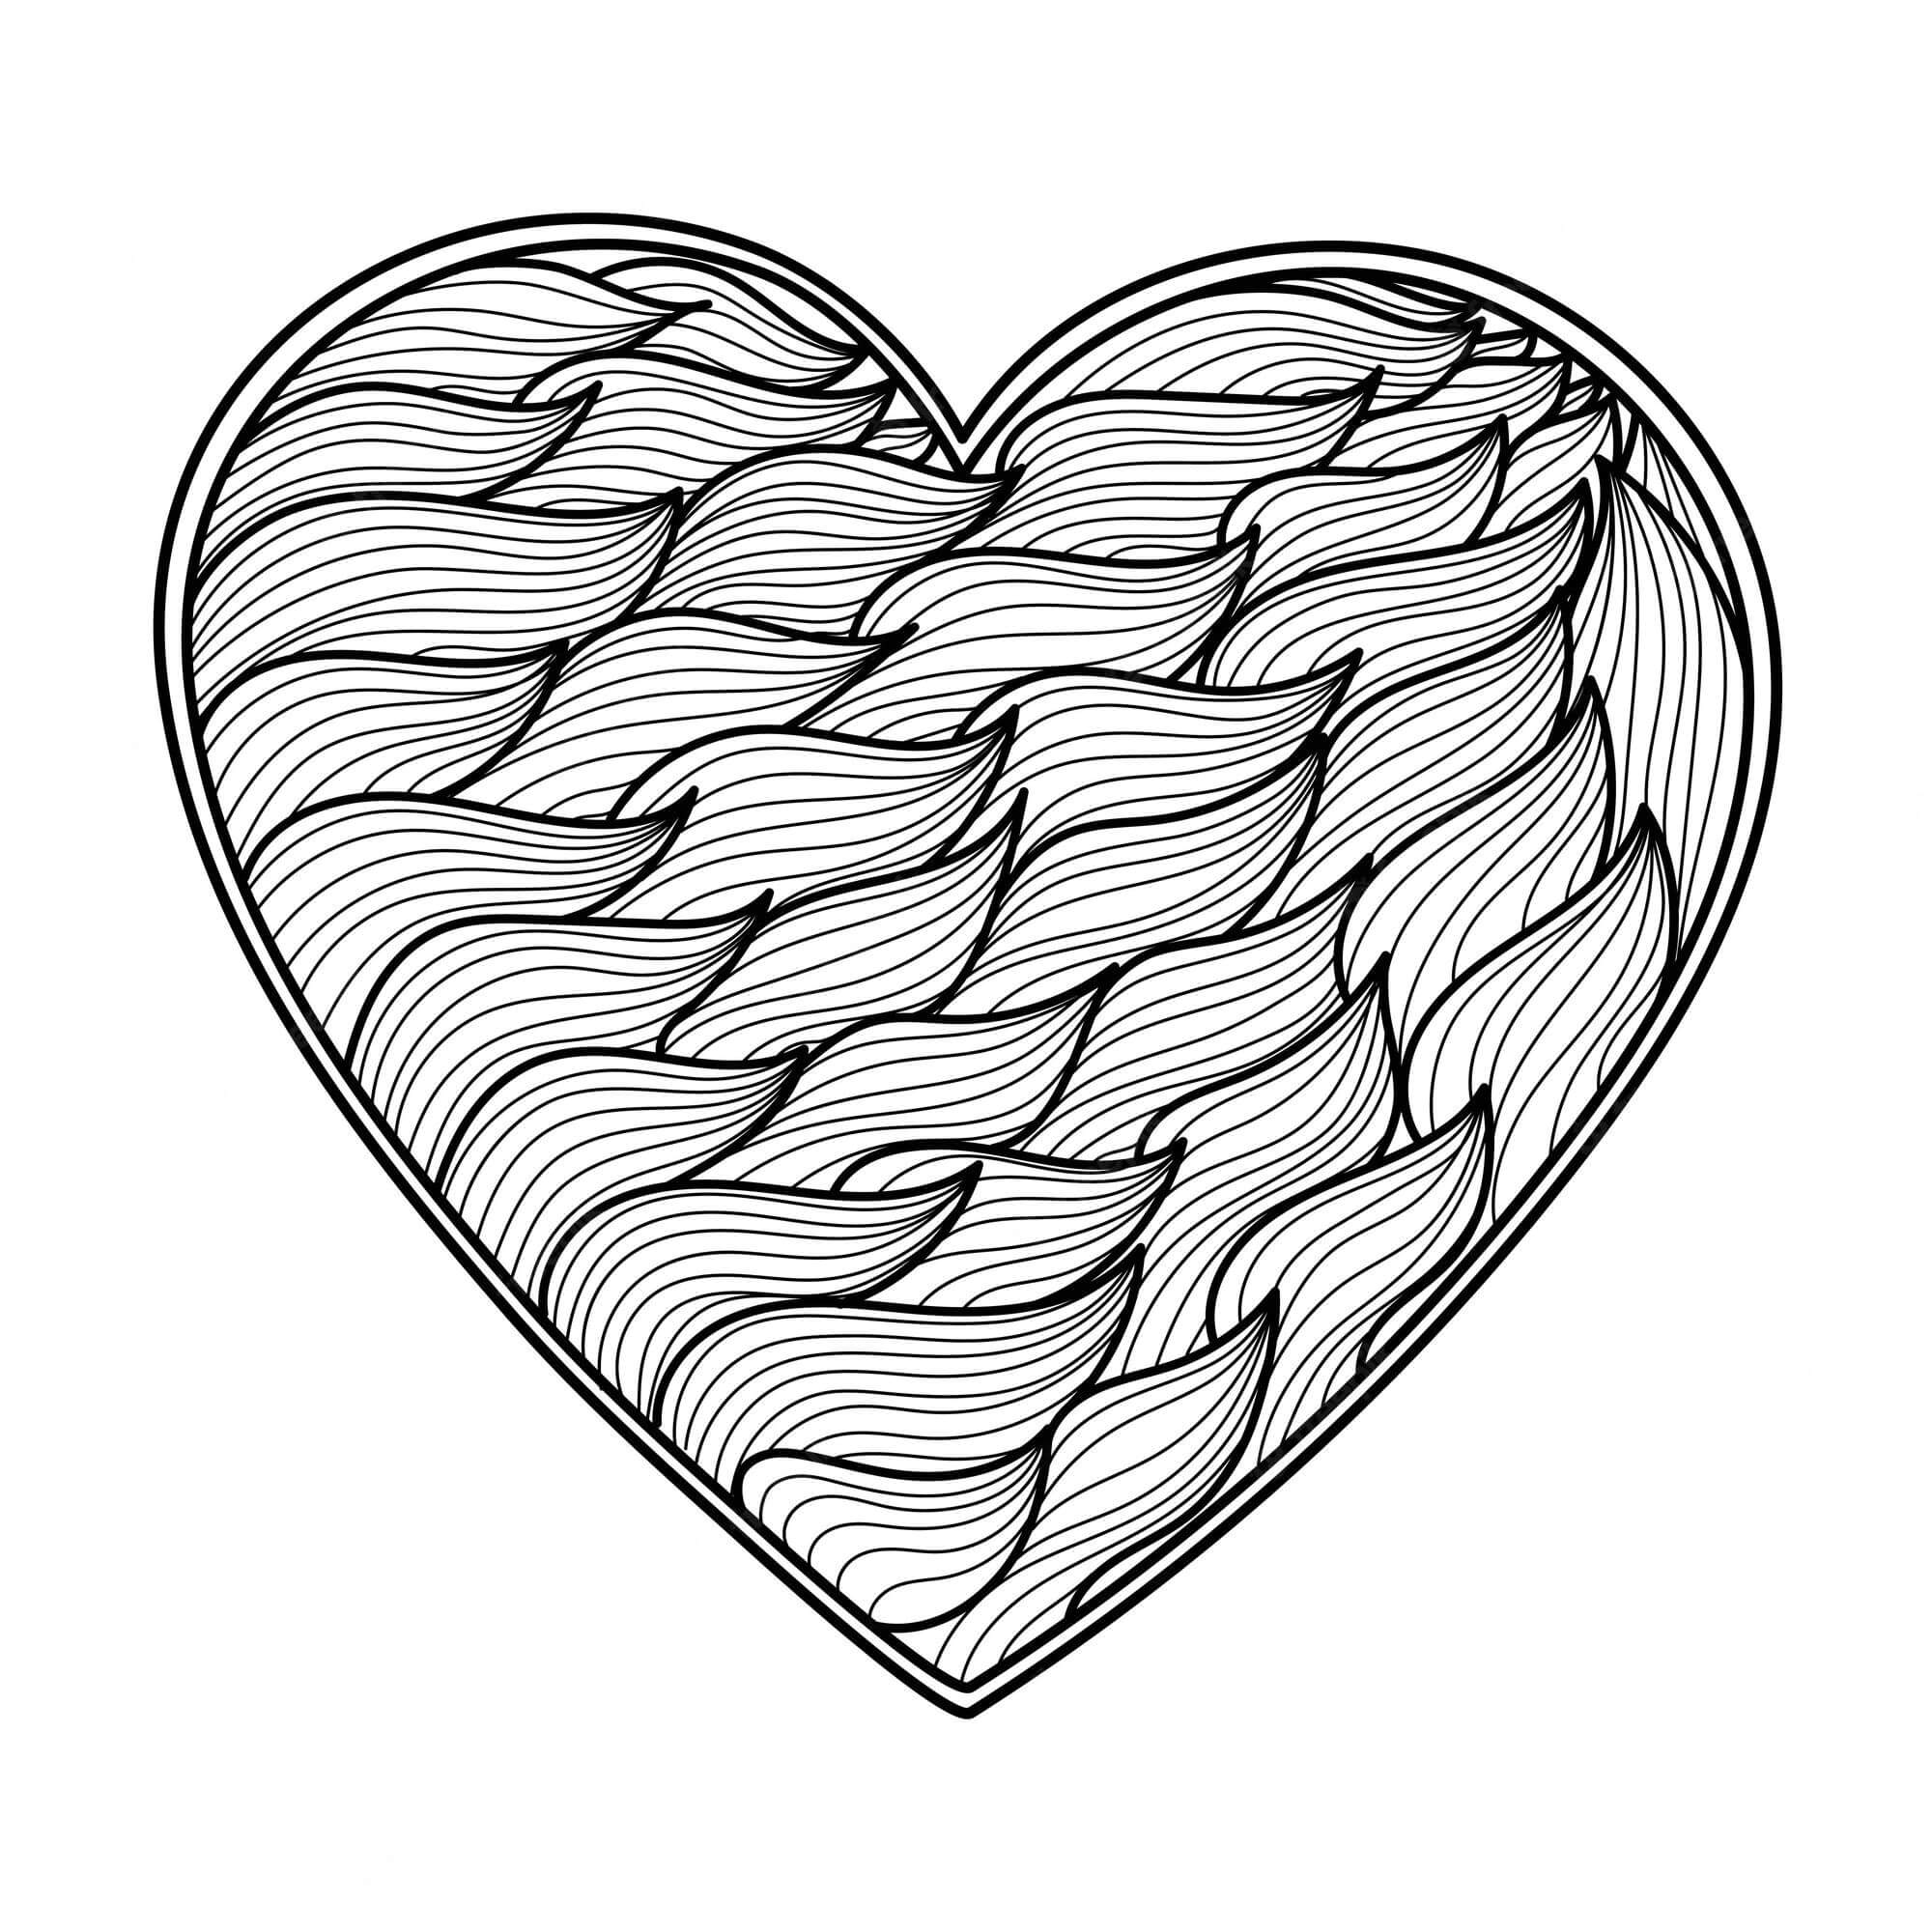 Målarbild Fantastiskt Hjärta Mandala